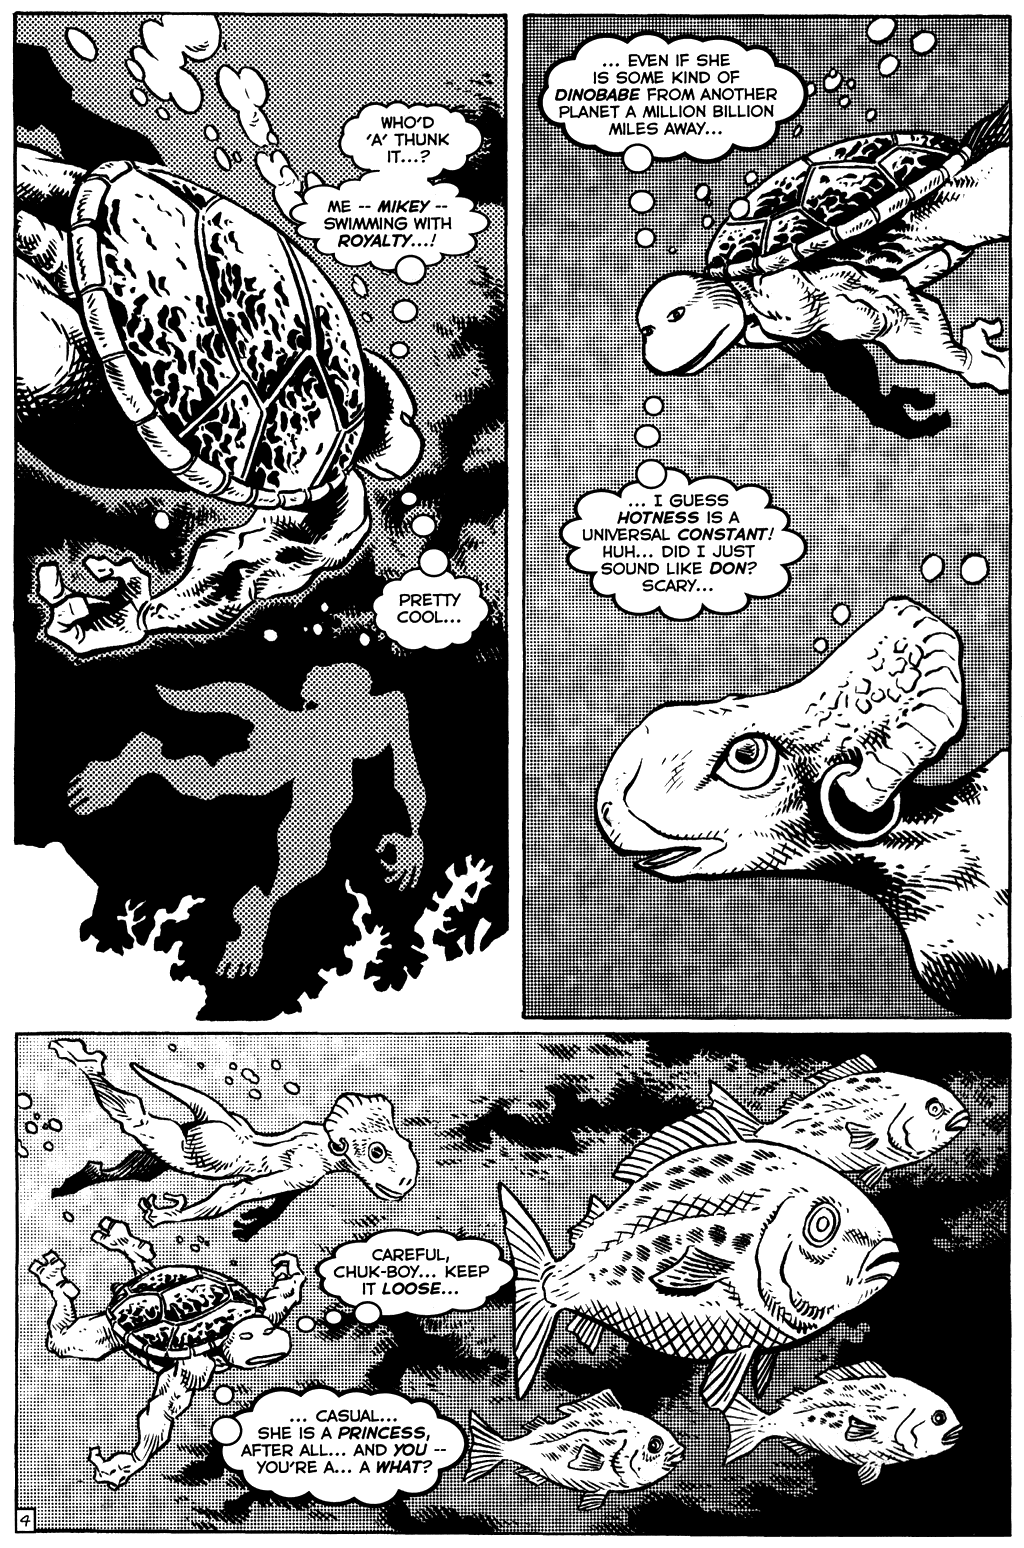 TMNT: Teenage Mutant Ninja Turtles issue 17 - Page 5